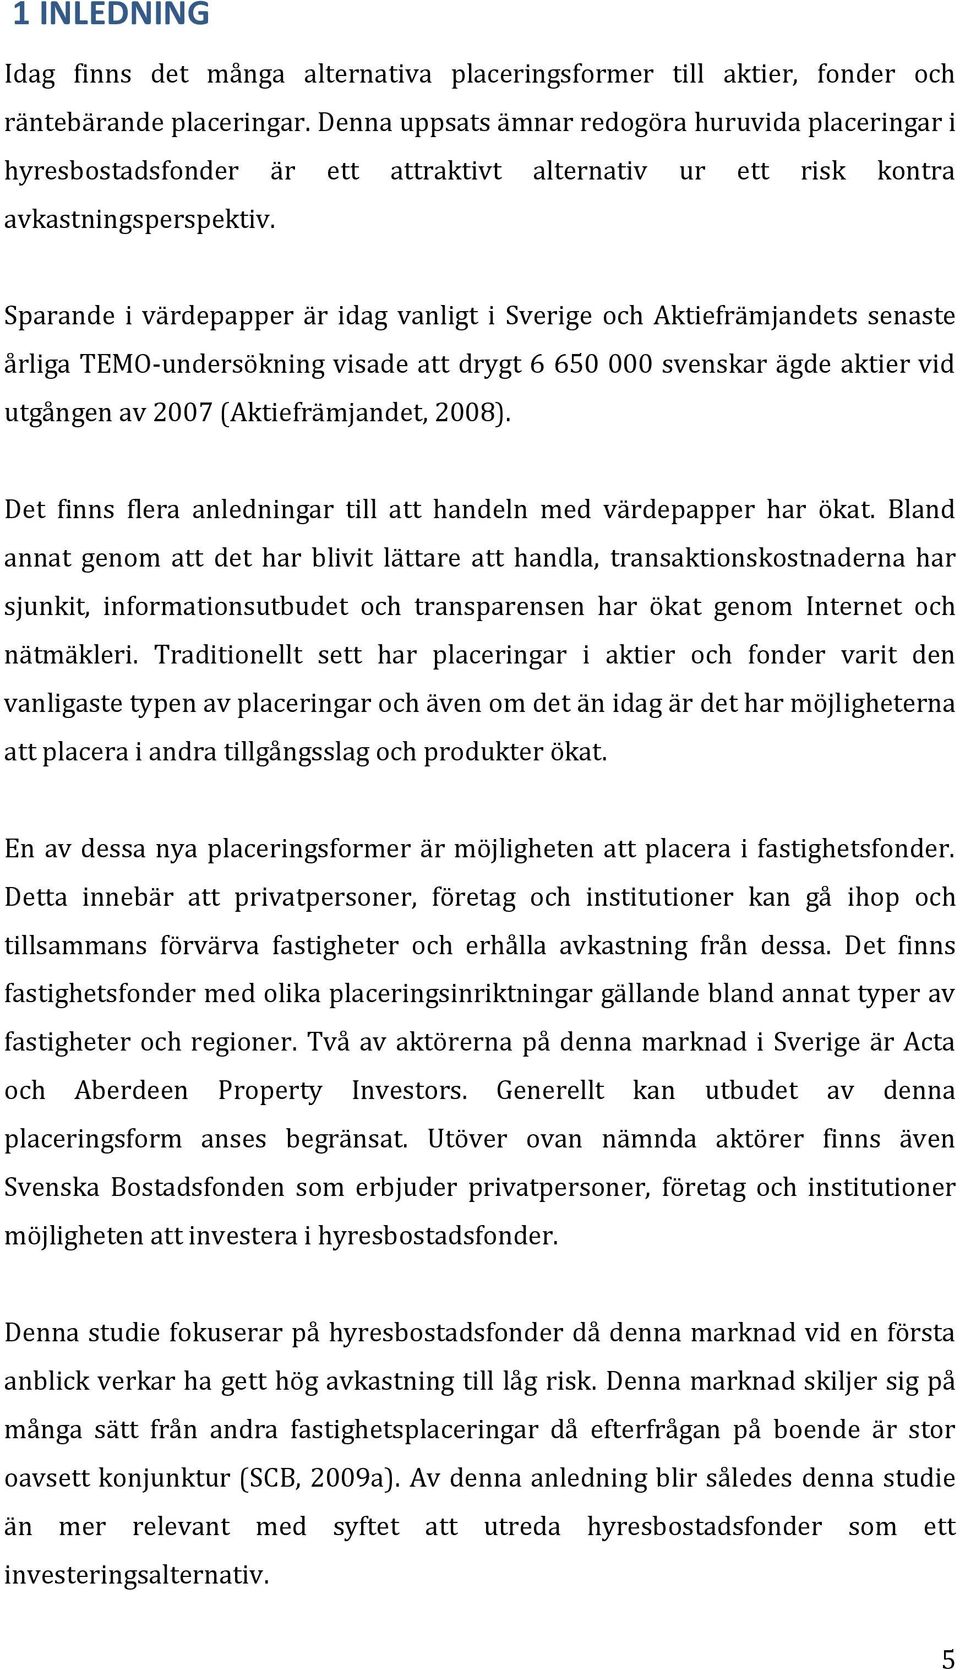 Sparande i värdepapper är idag vanligt i Sverige och Aktiefrämjandets senaste årliga TEMO-undersökning visade att drygt 6 650 000 svenskar ägde aktier vid utgången av 2007 (Aktiefrämjandet, 2008).